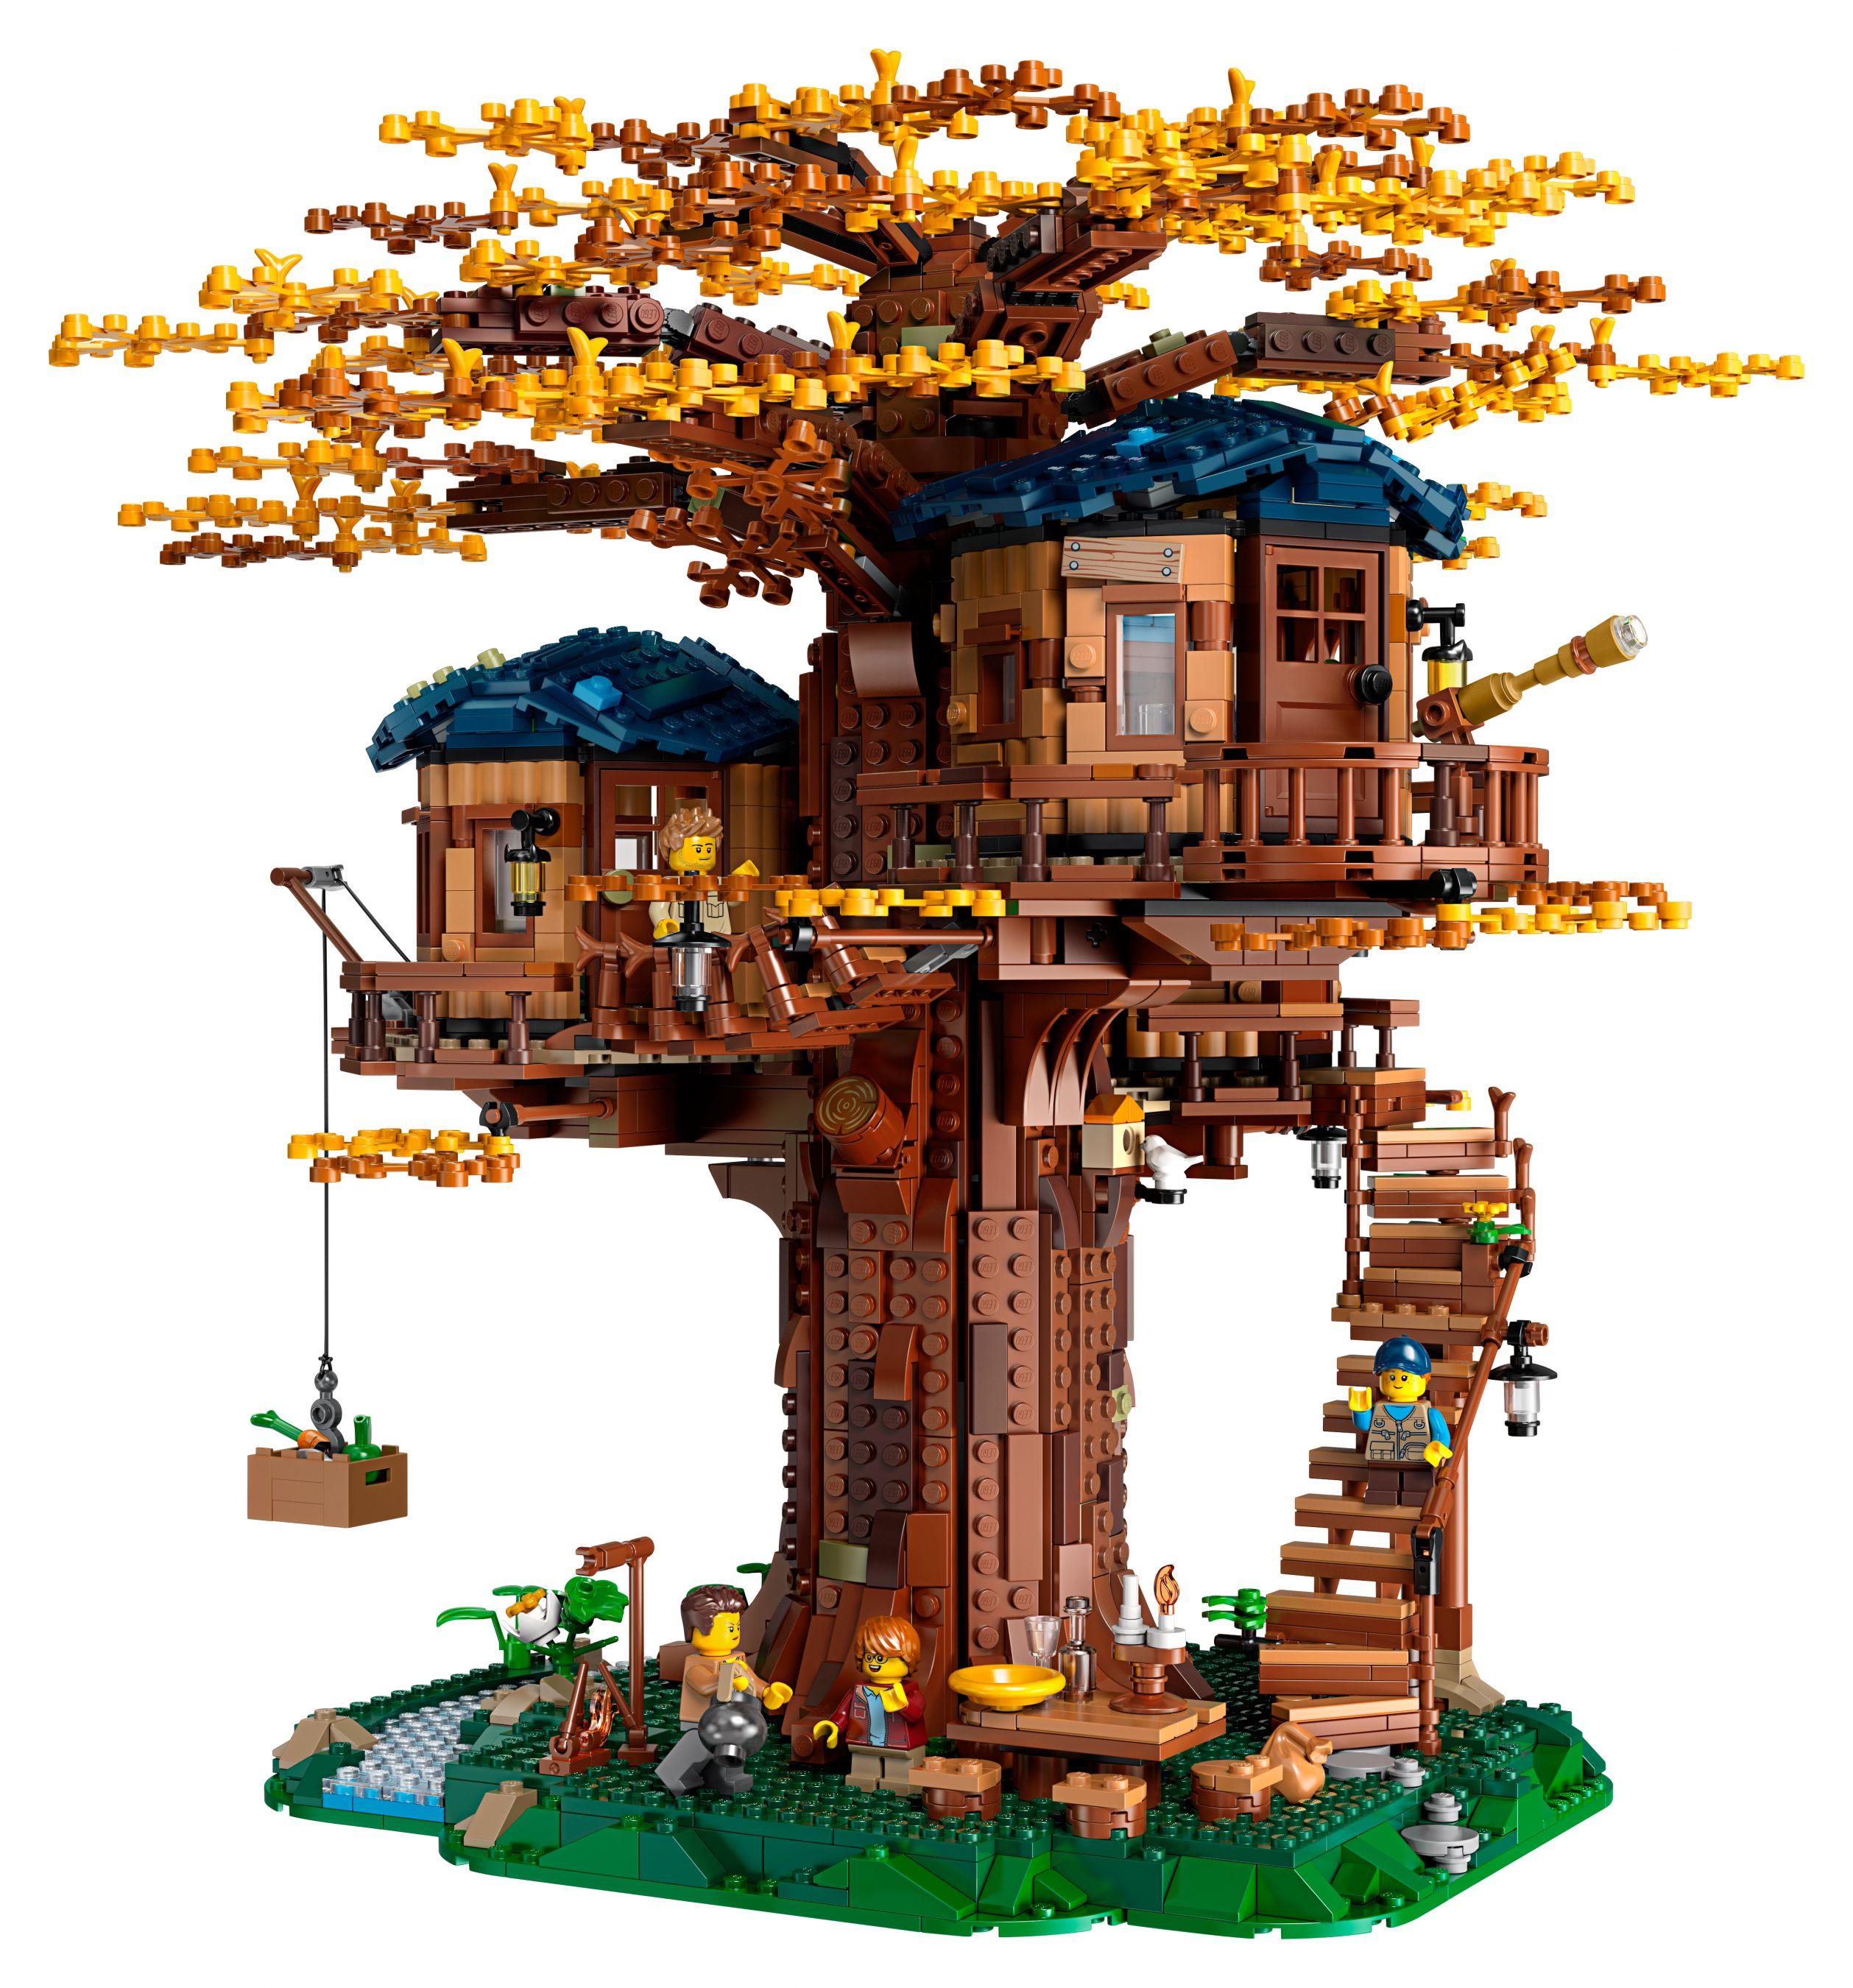 21318 LEGO Baumhaus Bausatz